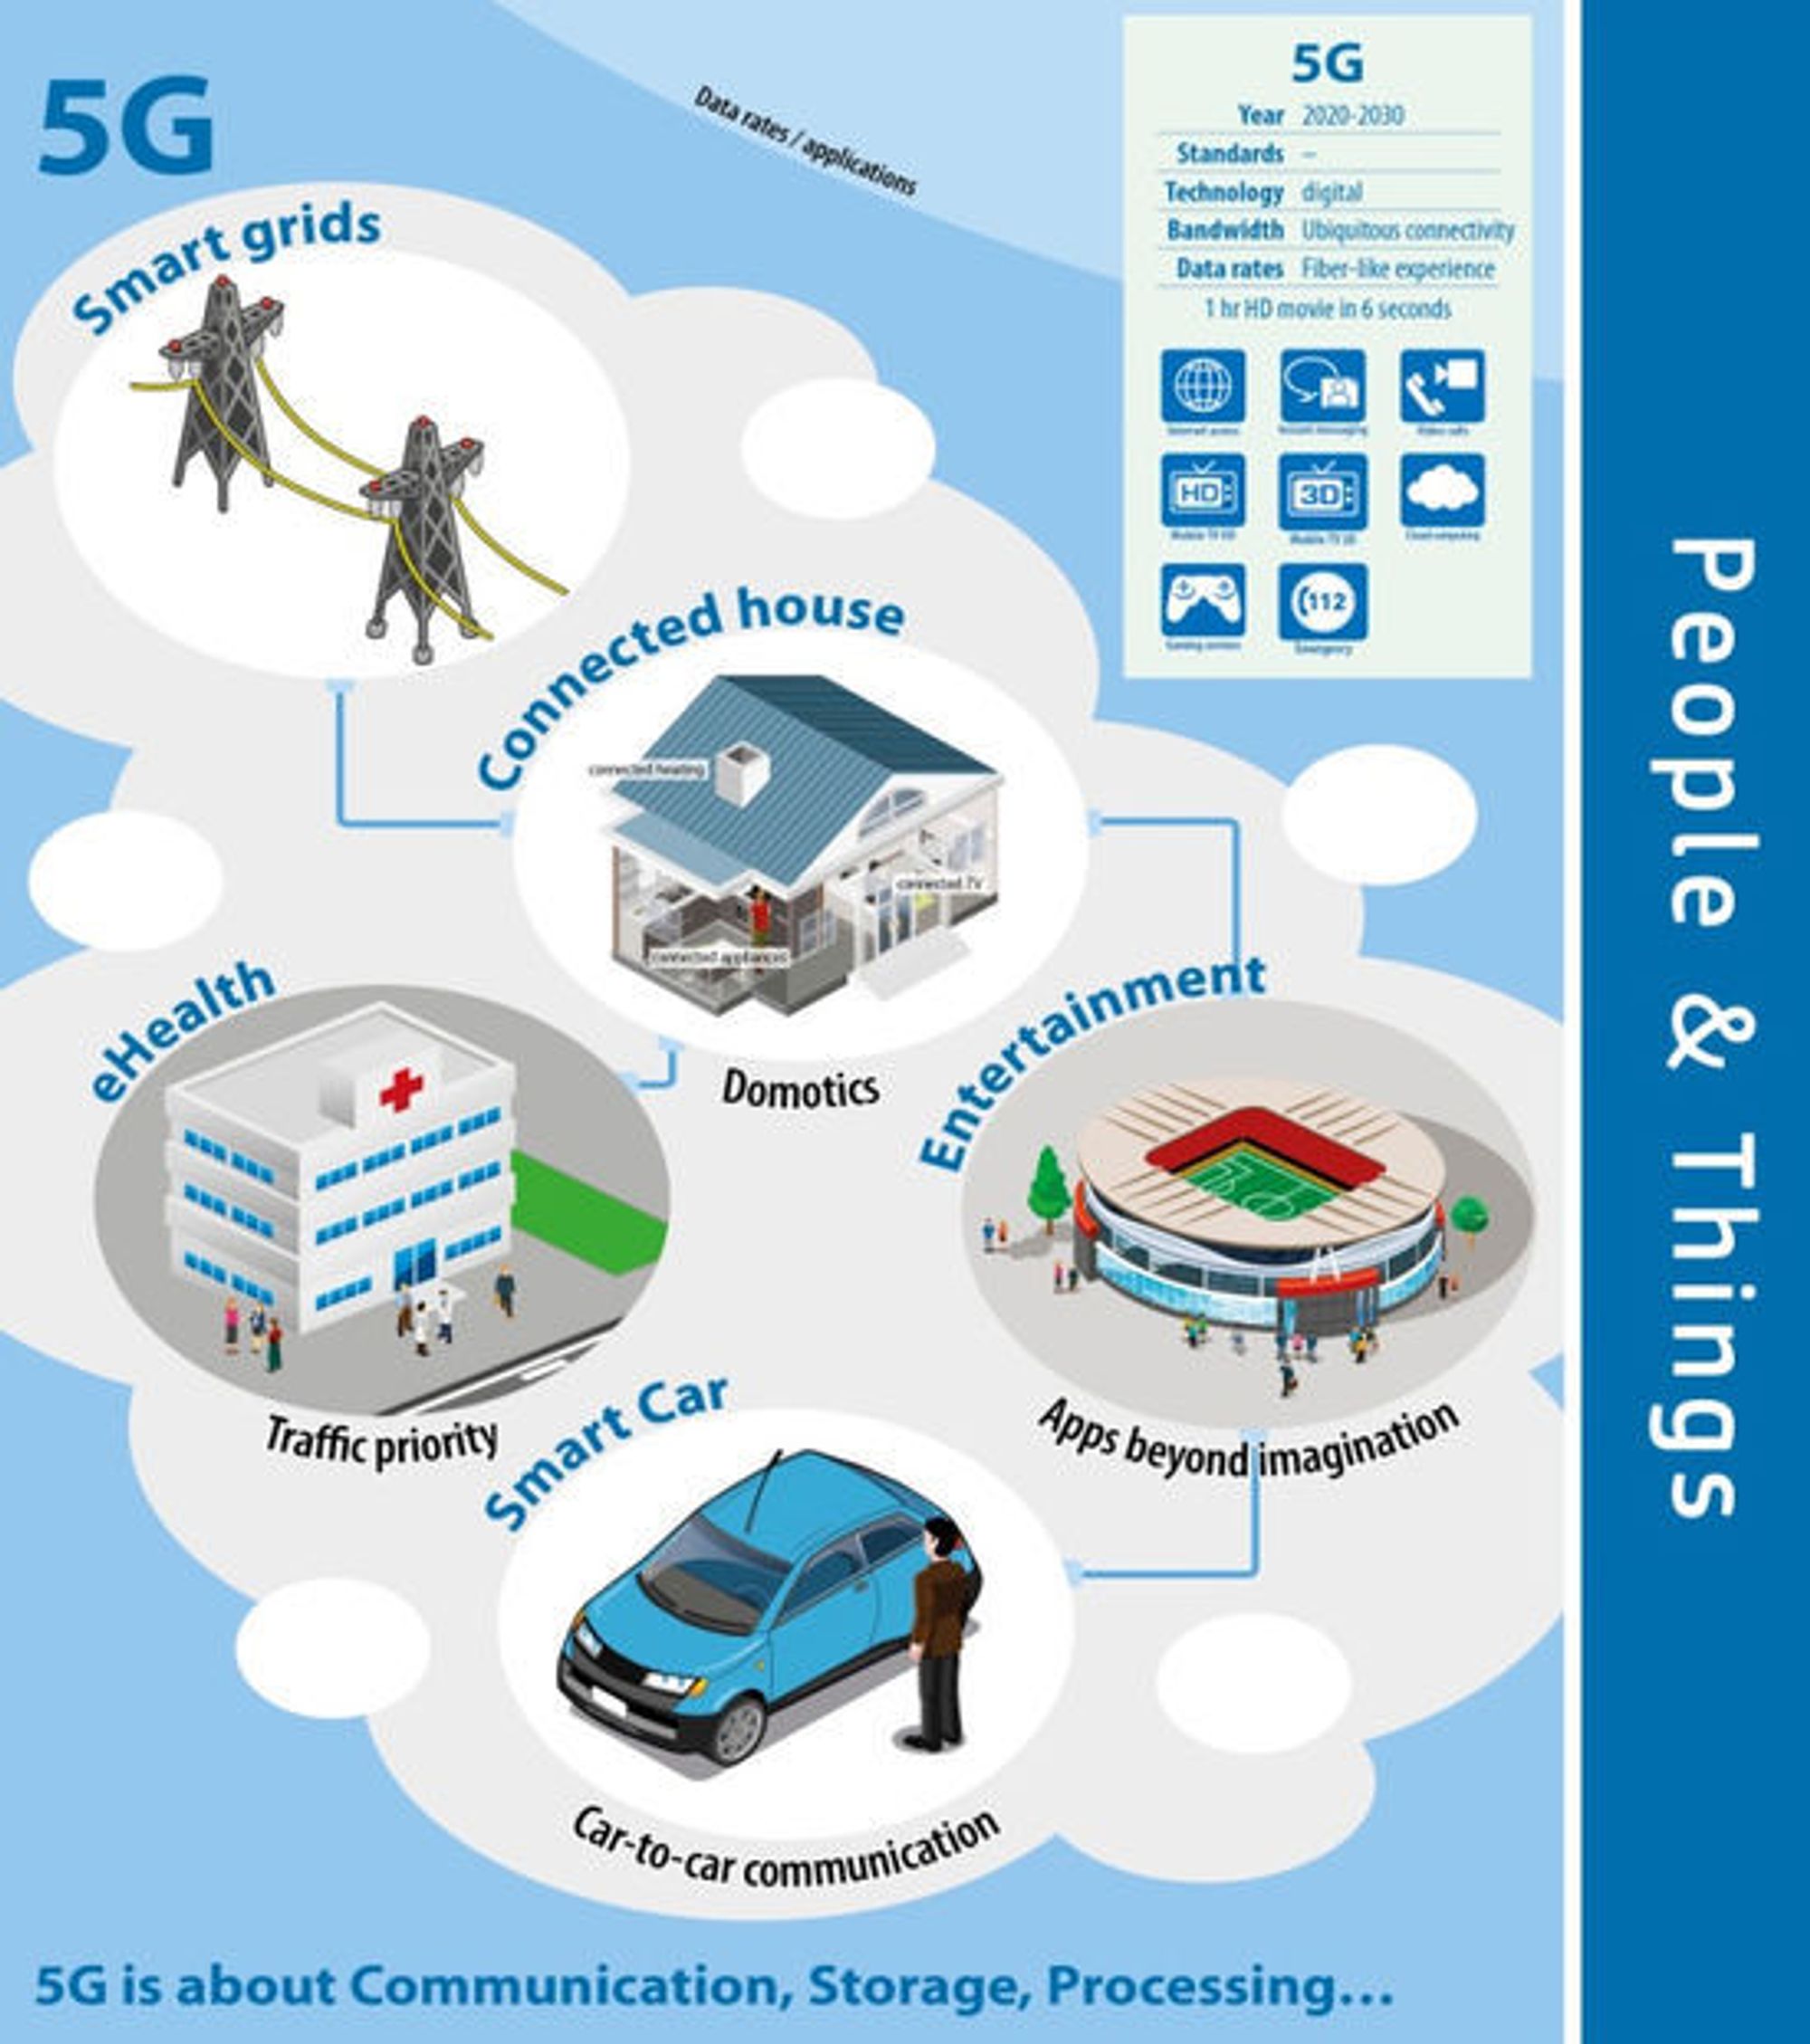 IIfølge EU handler 5G blant annet om kommunikasjon, lagring og prosessering. Dette inkluderer kommunikasjon blant annet mellom smarte kjøretøyer, smarte hjem, eHelse, smarte strømnett og selvfølgelig underholdning. 